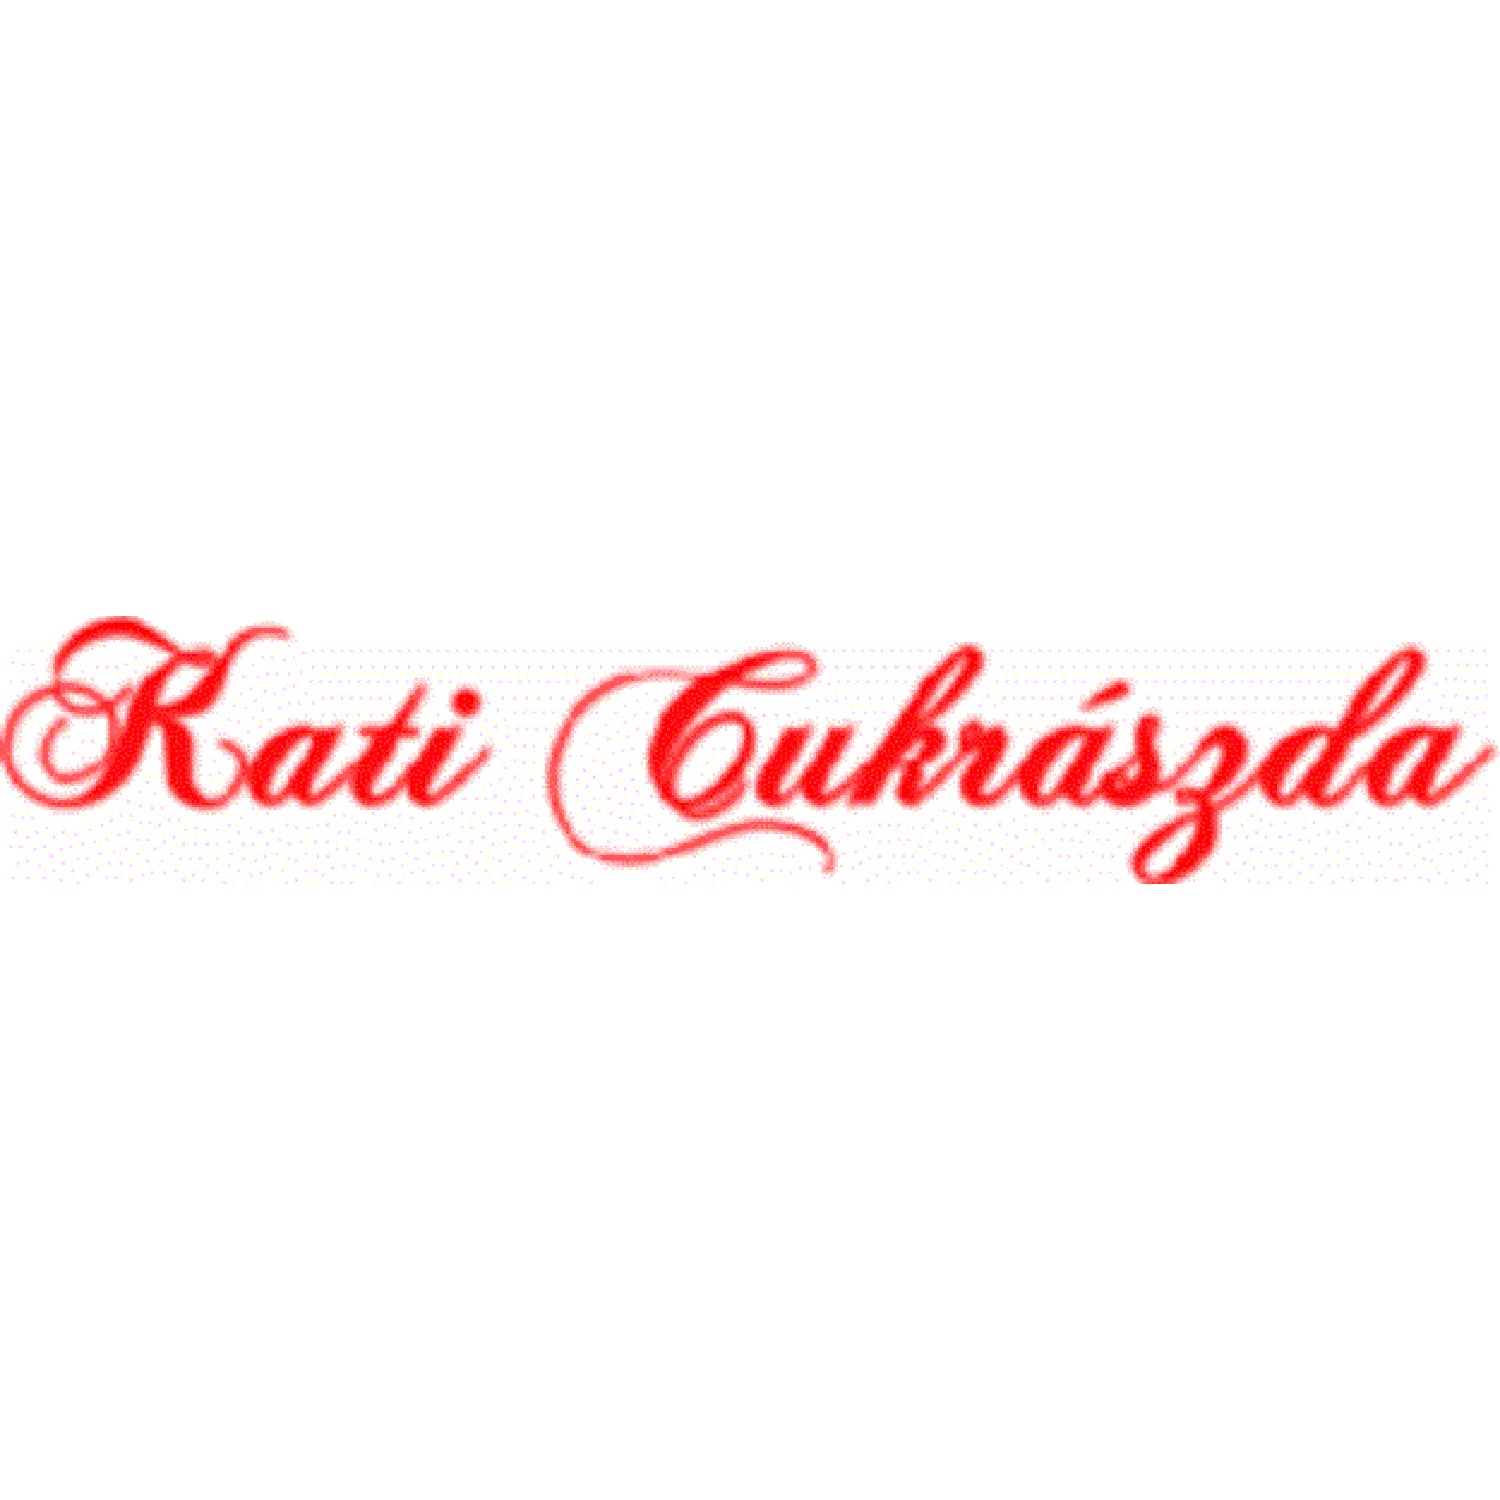 Kati Cukrászda Logo